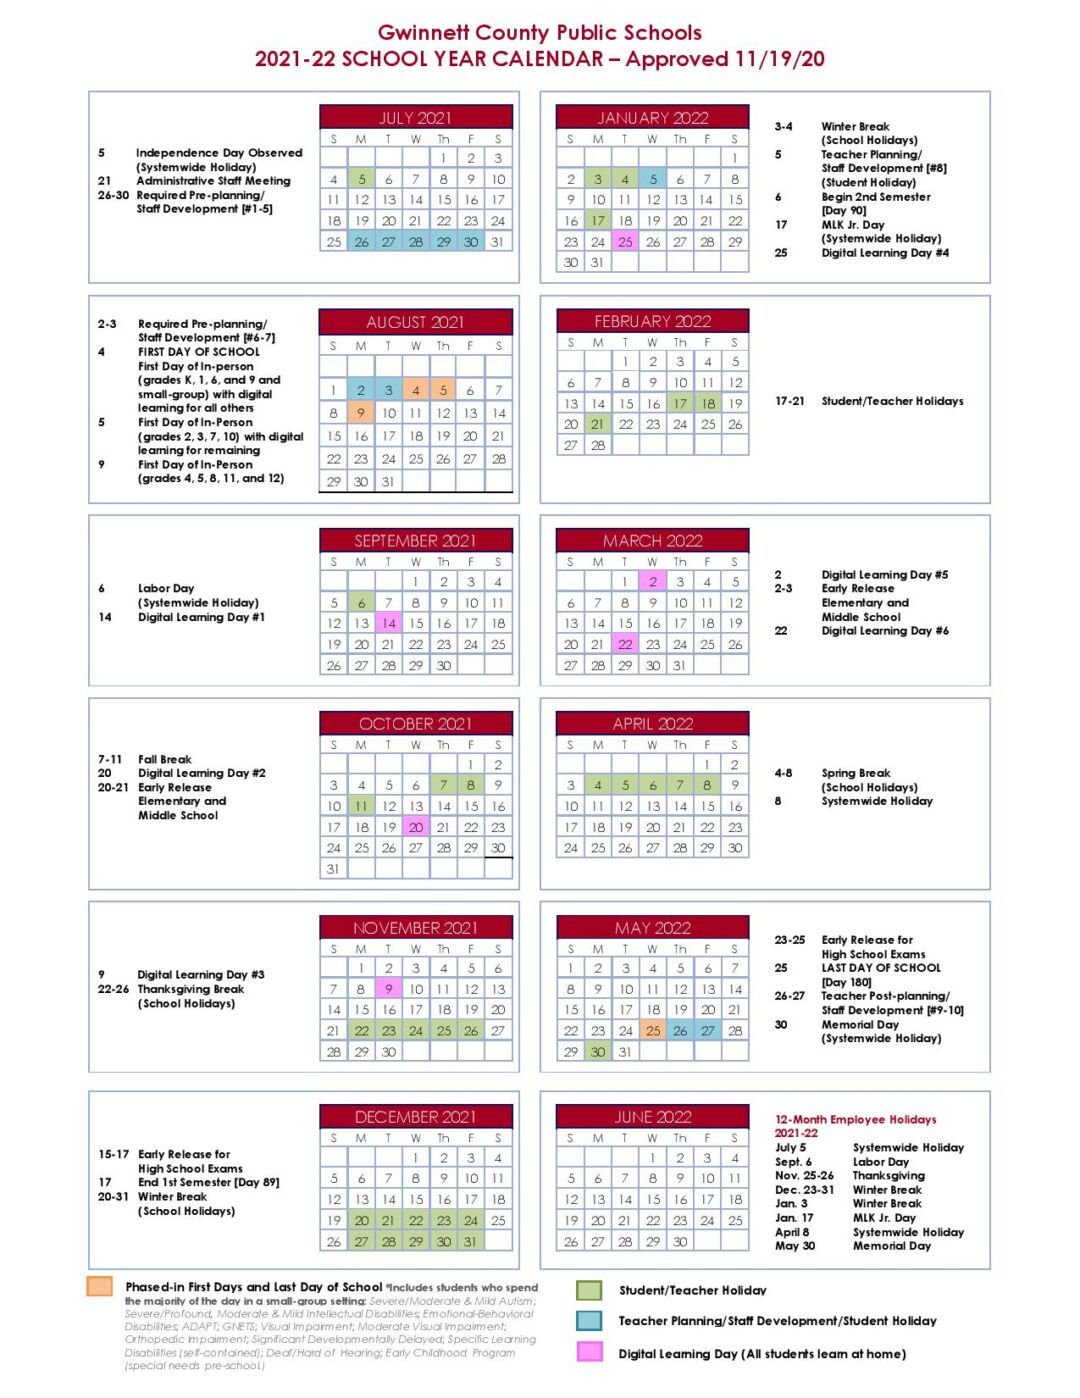 Gwinnett County Public Schools Calendar 2021-2022-2021 And 2022 School Calendar Free Printable